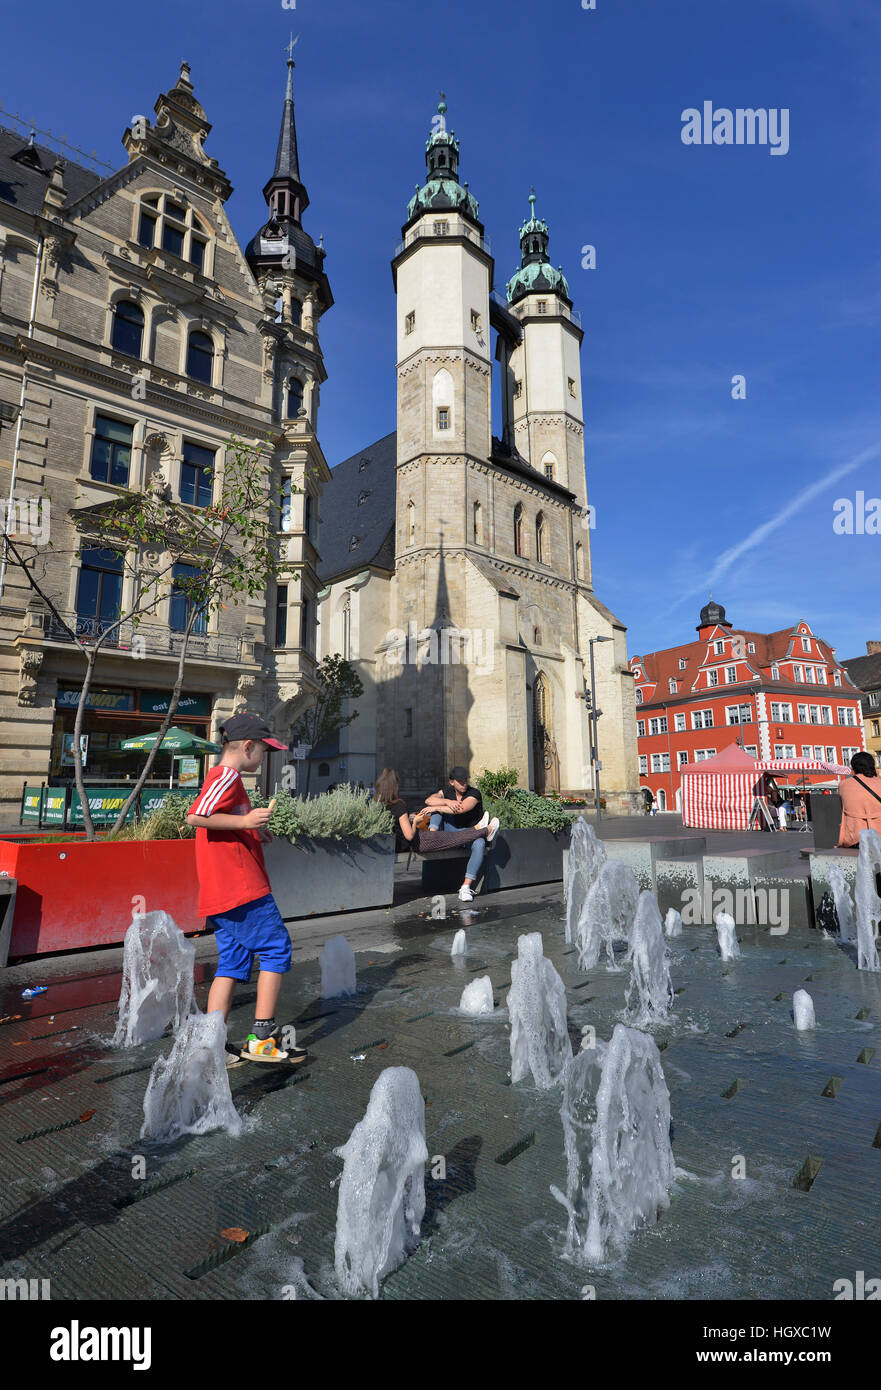 Brunnen, Marktkirche St. Marien, Marktplatz, Halle an der Saale, Sachsen-Anhalt, Deutschland Stock Photo